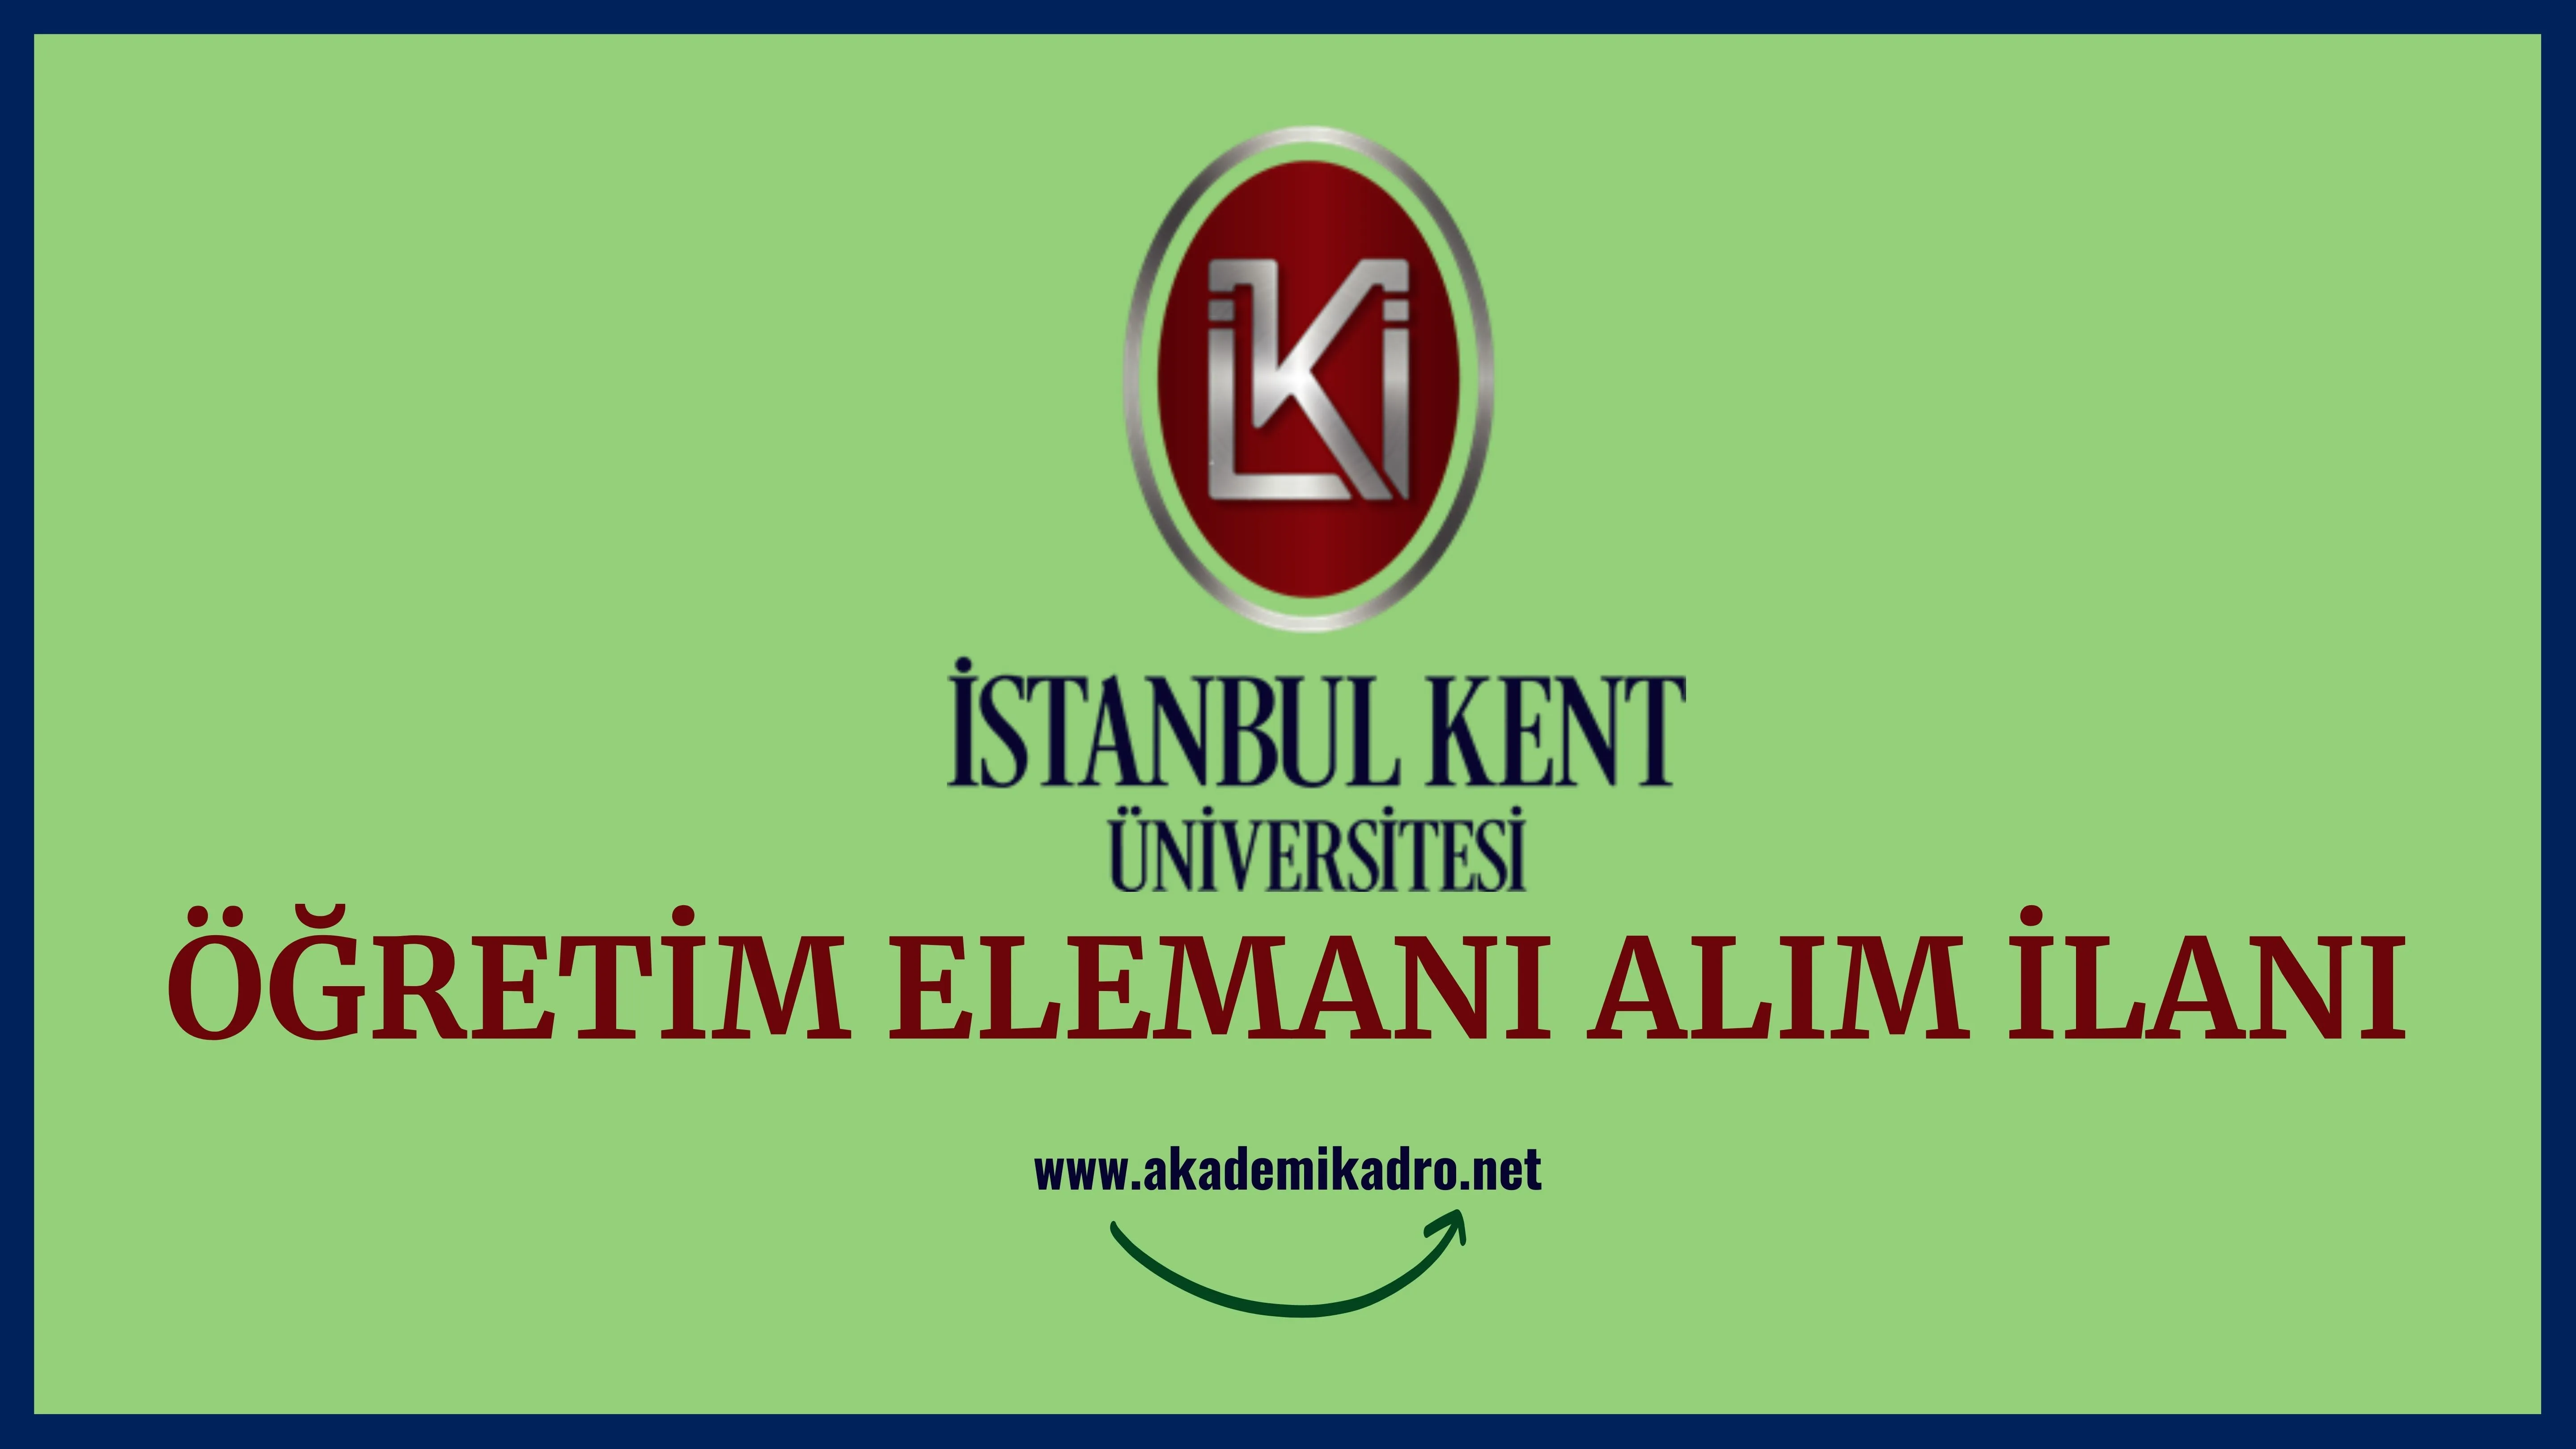 İstanbul Kent Üniversitesi 85 öğretim üyesi ve 6 Öğretim görevlisi alacaktır.